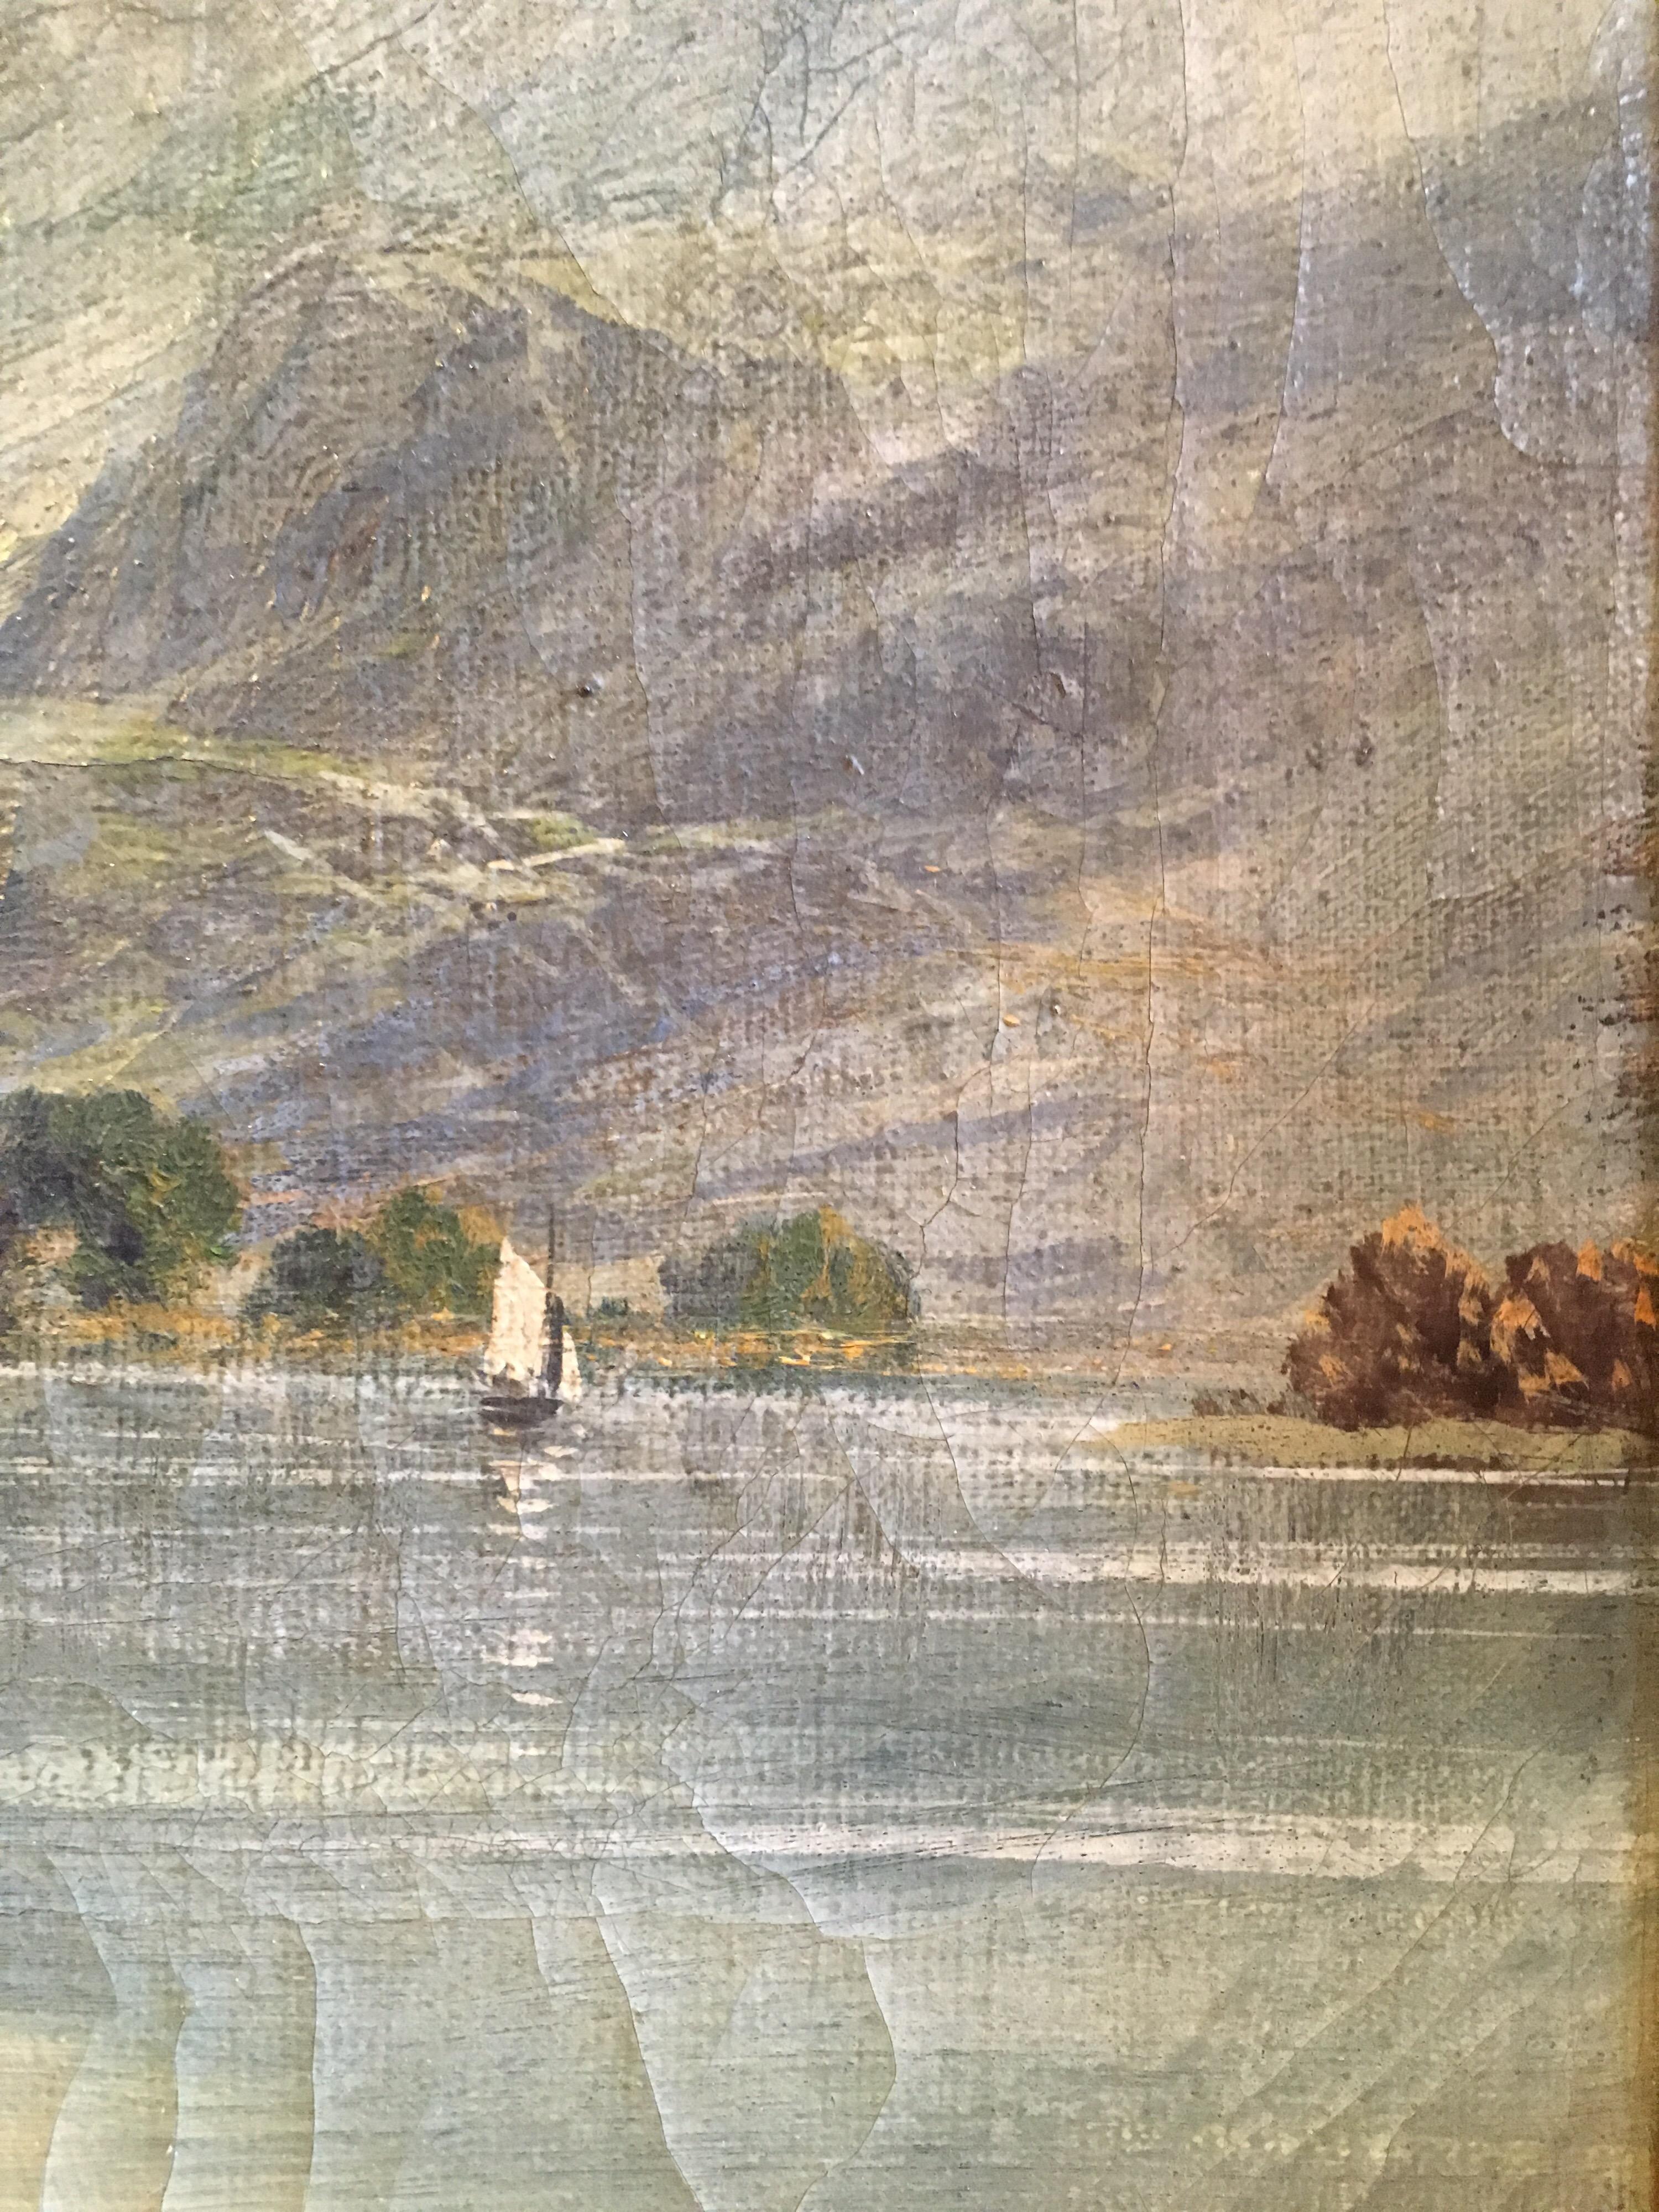 Loch Lomond, View of the Jetty, ancienne peinture à l'huile écossaise, signée
par F. E. Jamieson (britannique, 1895-1950)
signé, coin inférieur gauche 
peinture à l'huile sur toile, encadrée
Encadré : 14.5 x 22.5 pouces

Peinture à l'huile ancienne